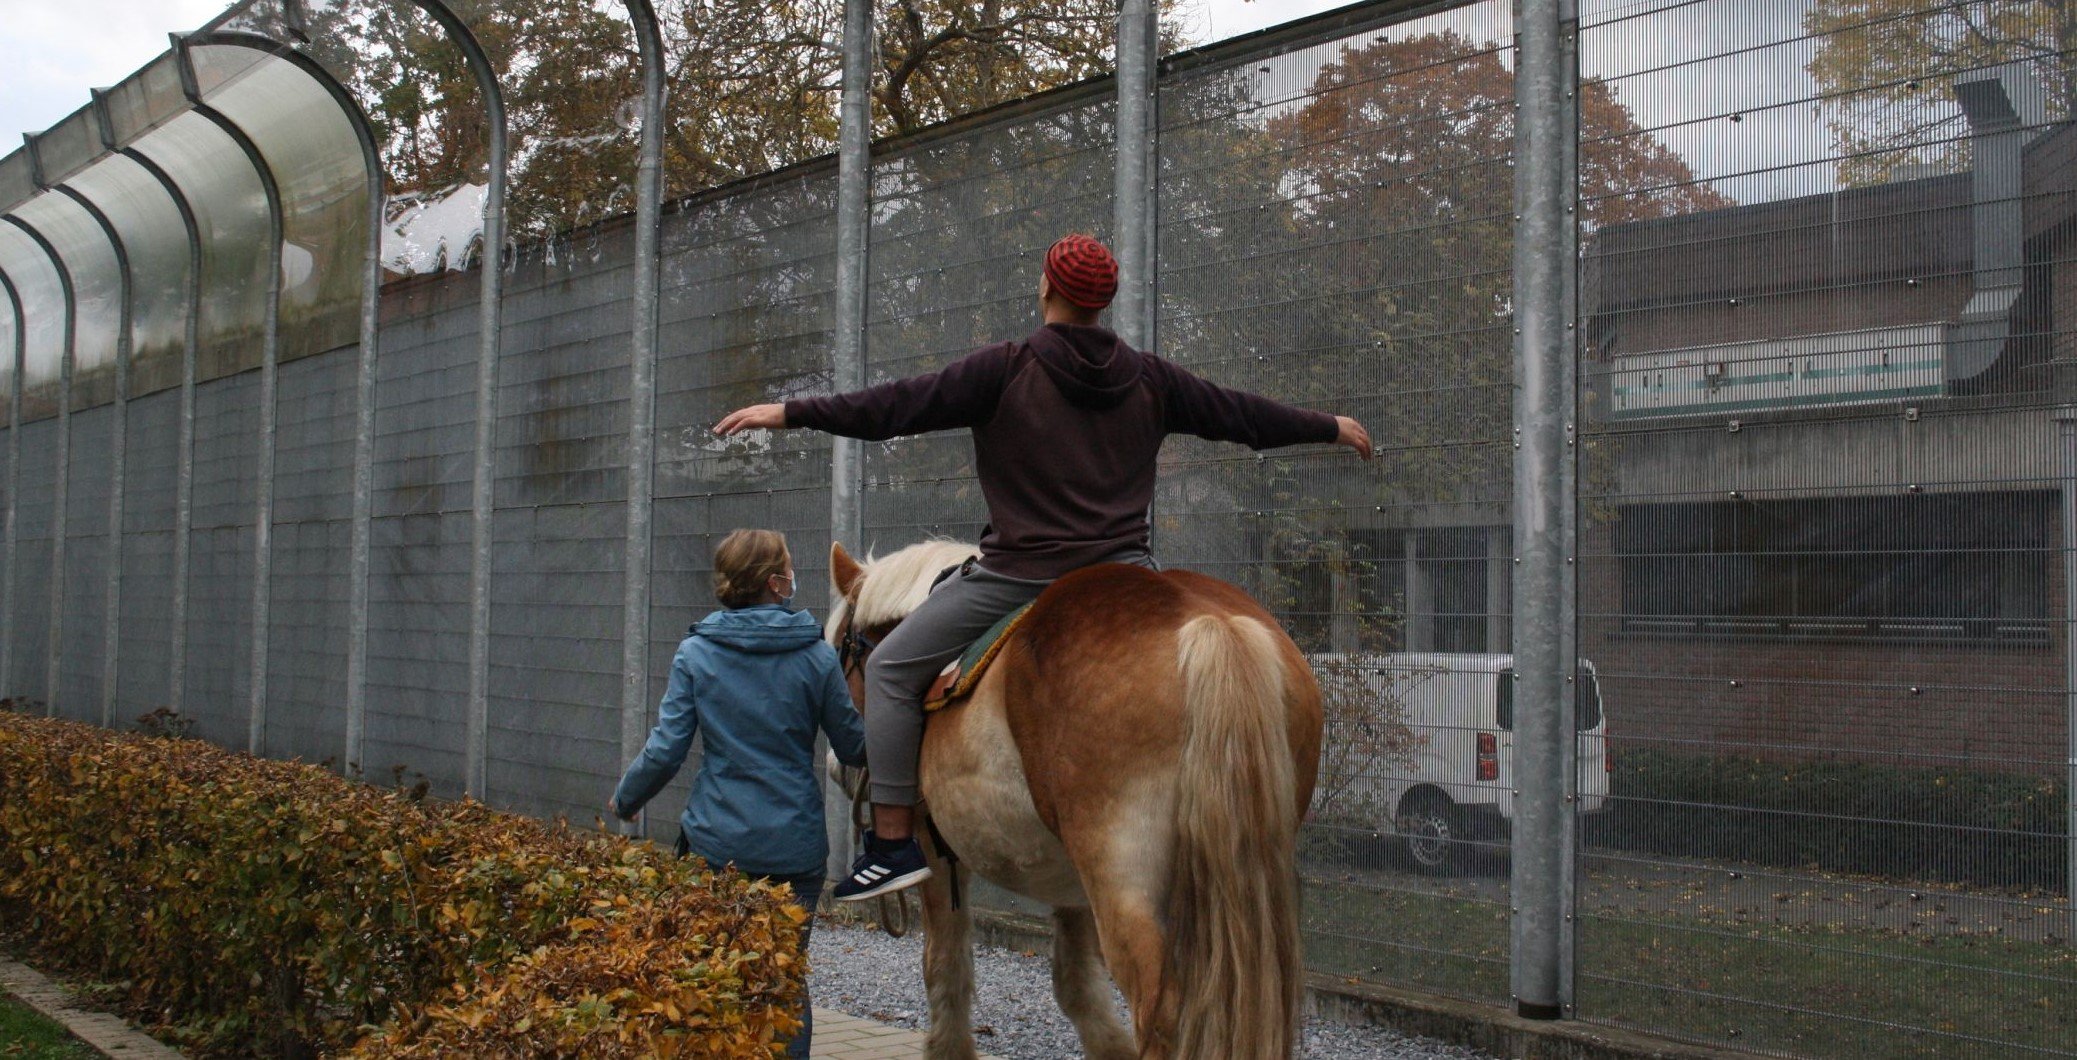 Trotz Sicherheitszaun: Die große Freiheit auf dem Pferderücken. Foto: LWL/Schulte-Fischedick